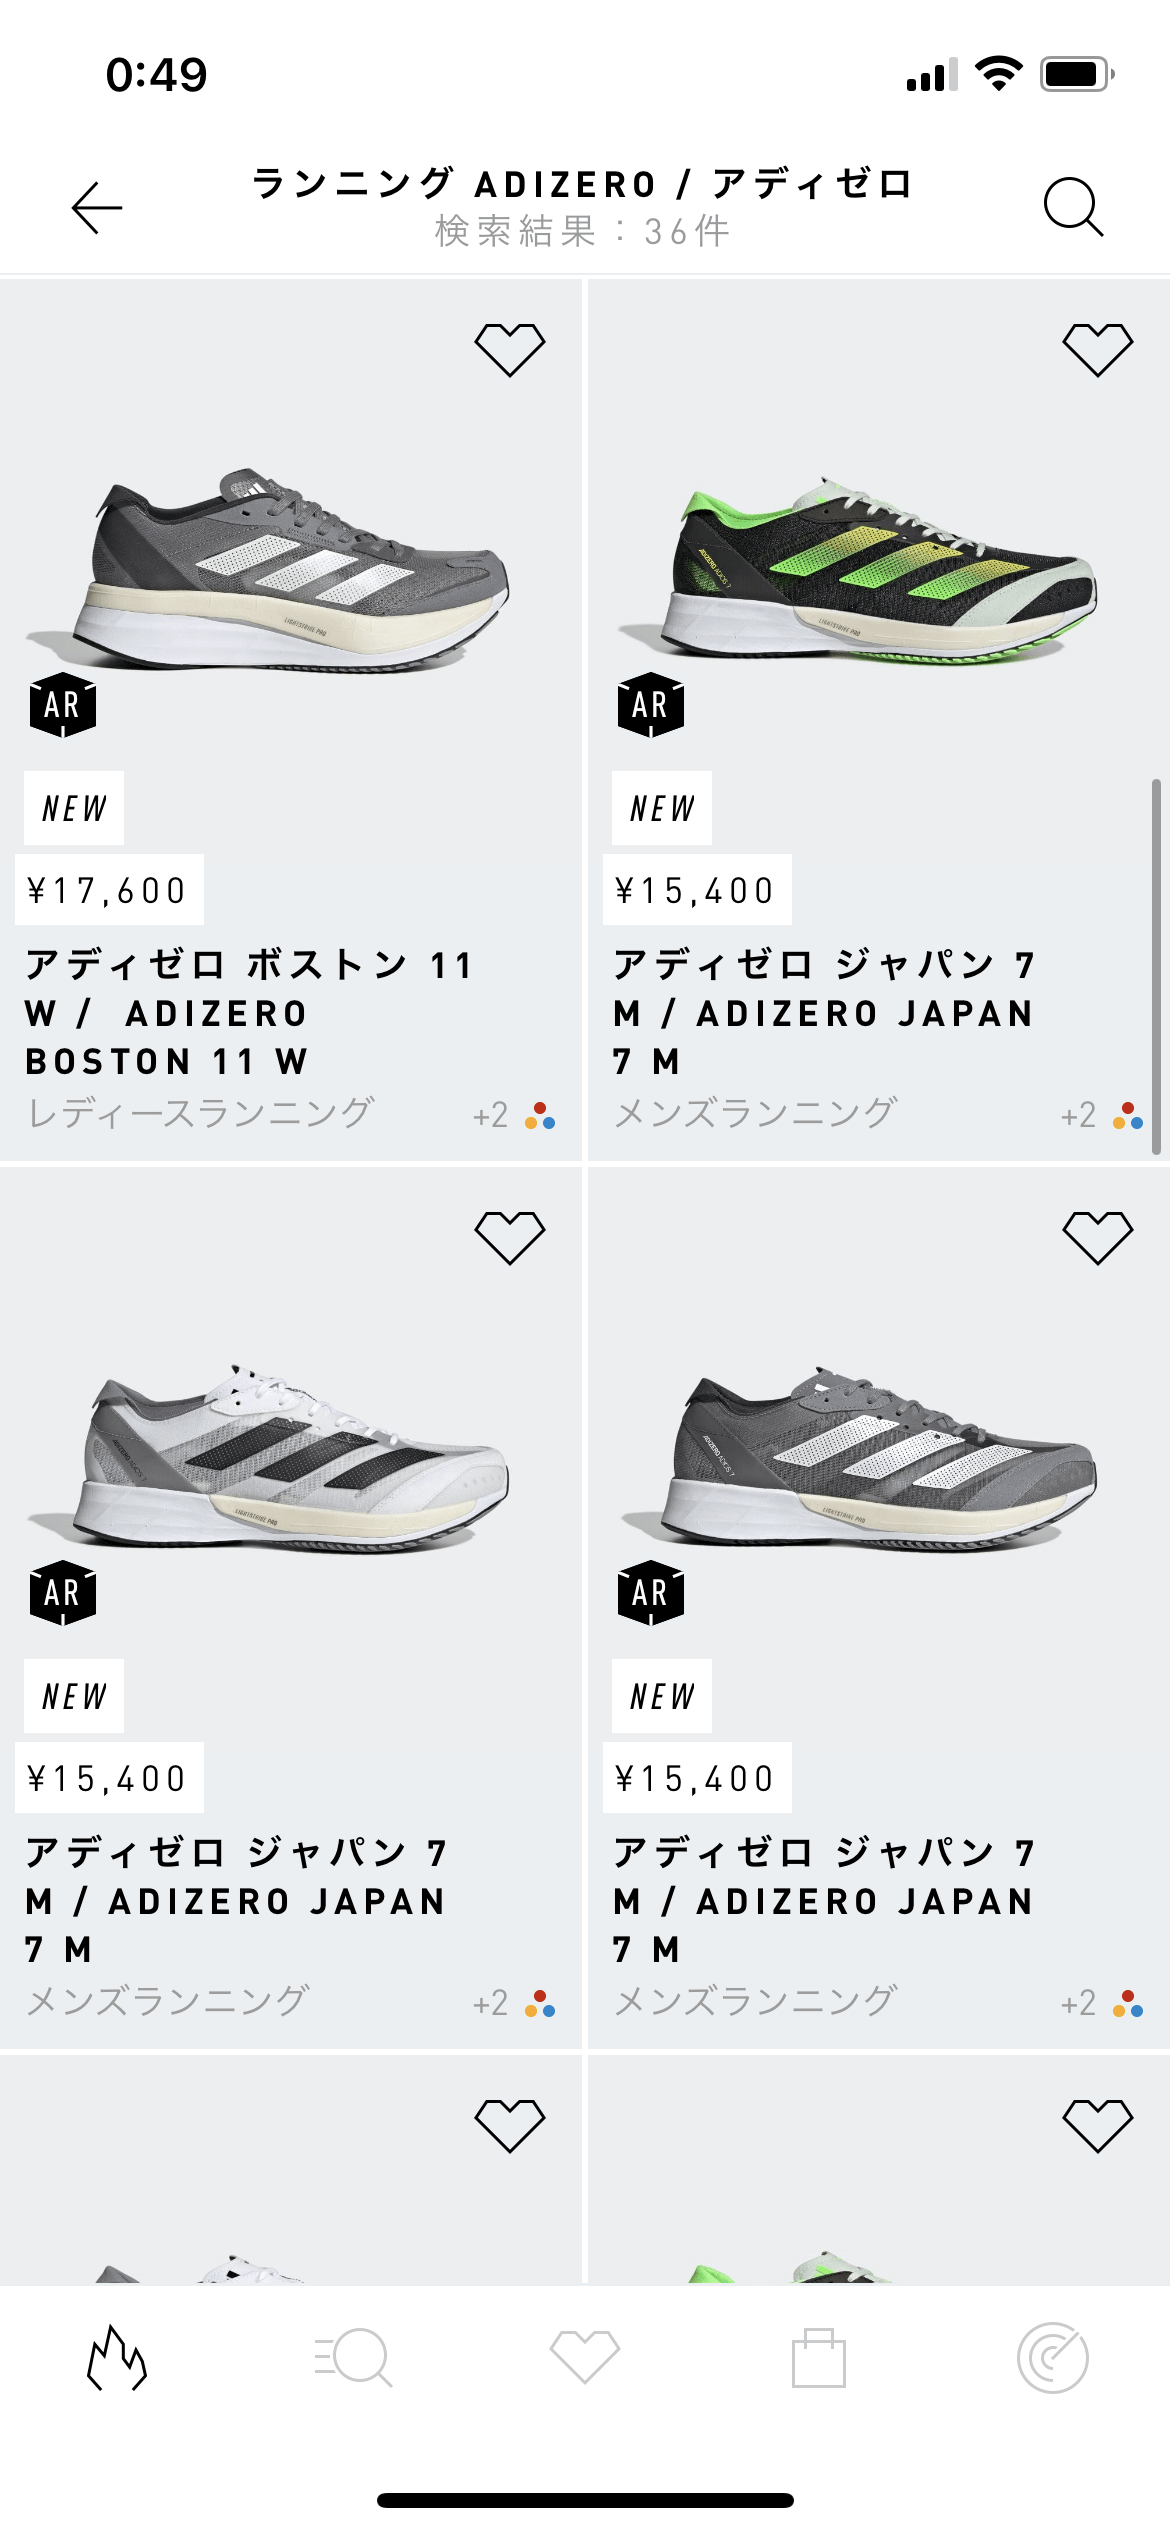 adidas 新着・新作 screen